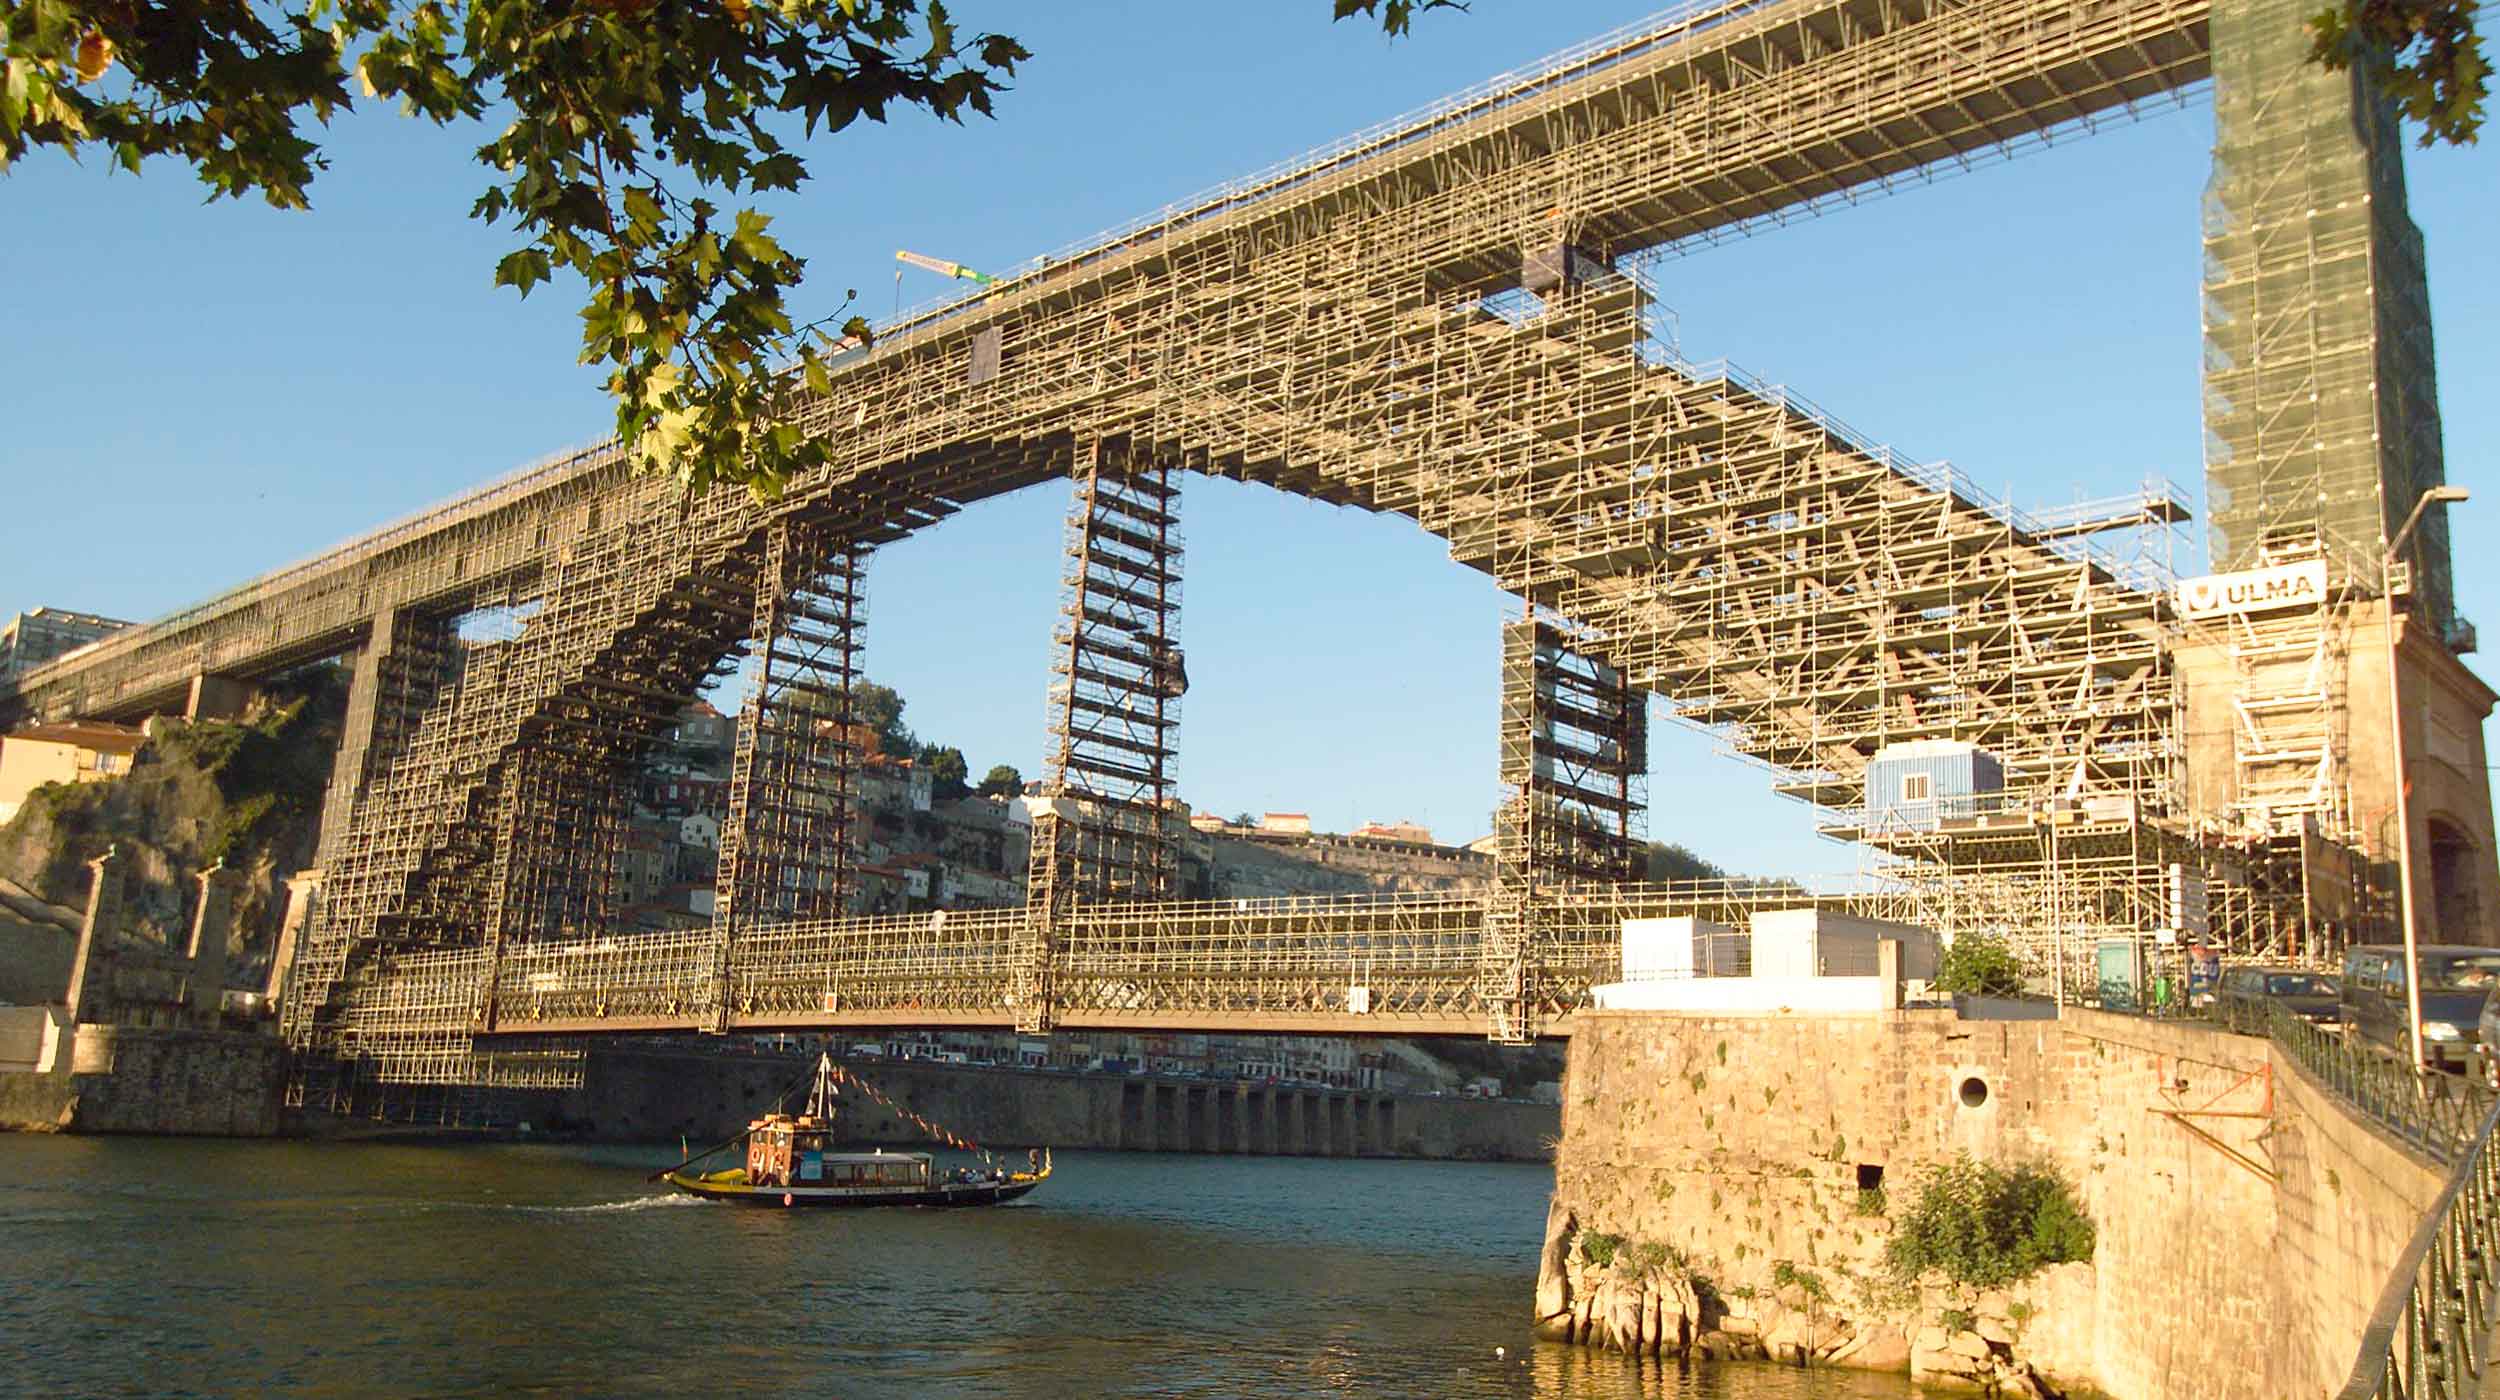 Das numerosas pontes do Porto, esta é a mais conhecida e impressionante da cidade.